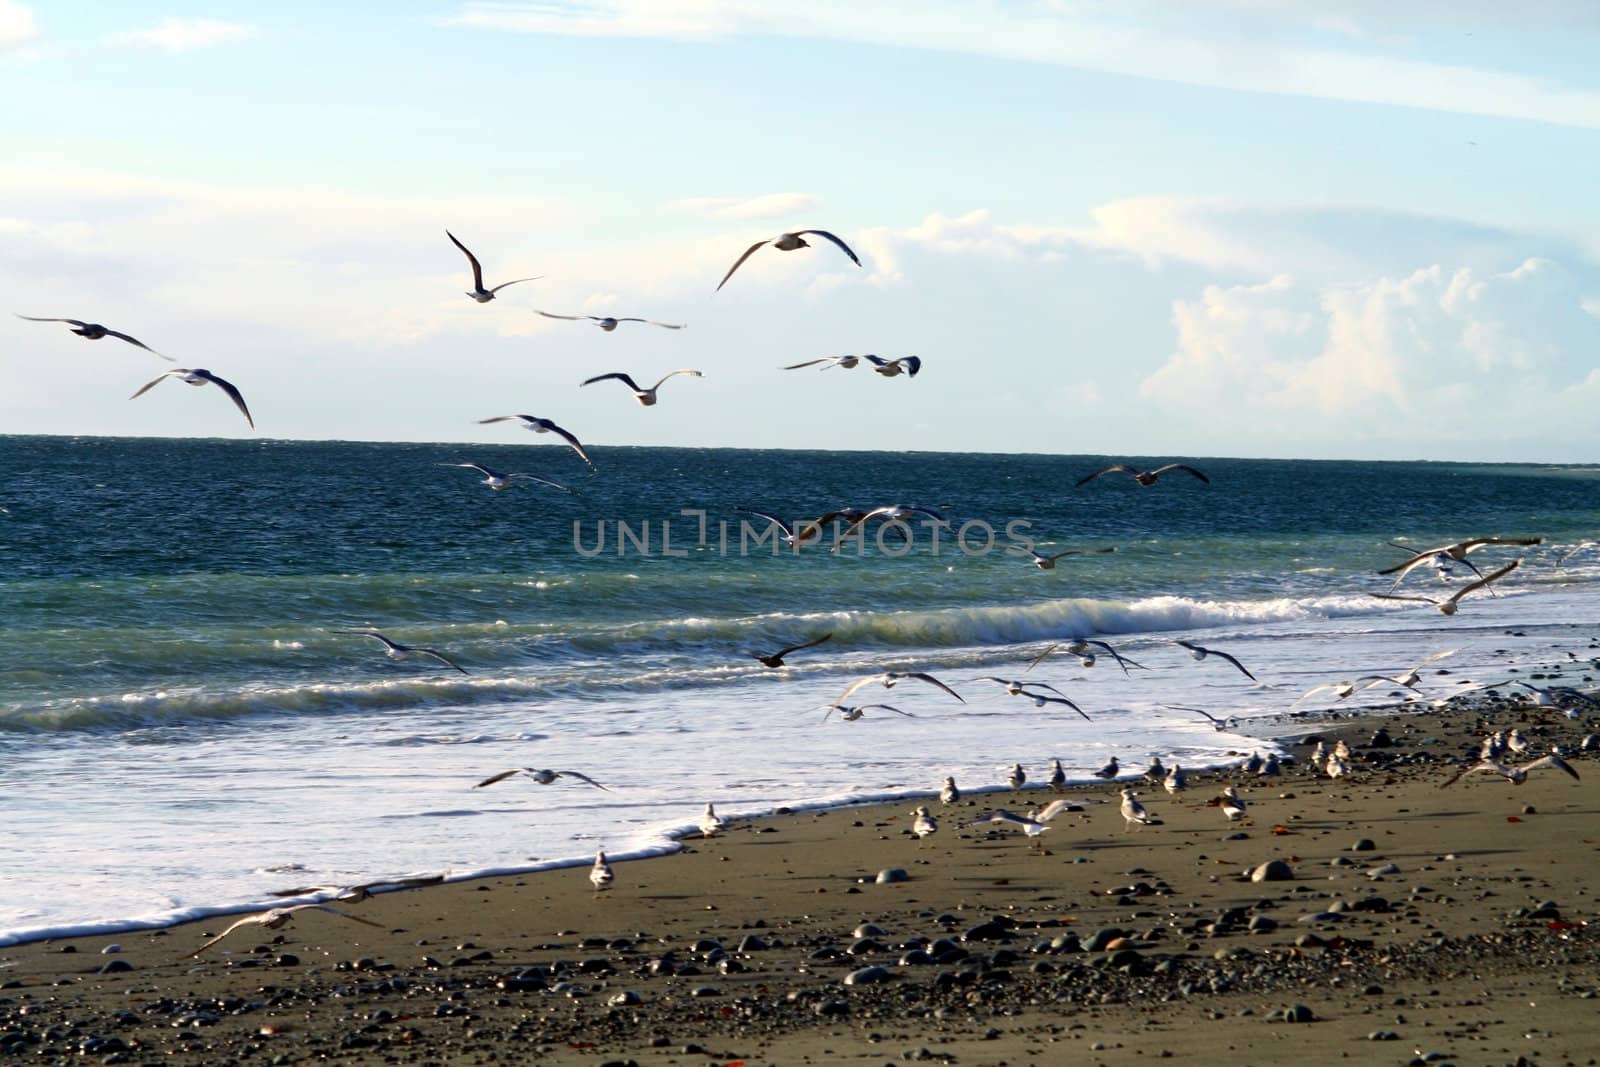 A flock of seagulls take flight along the beach.